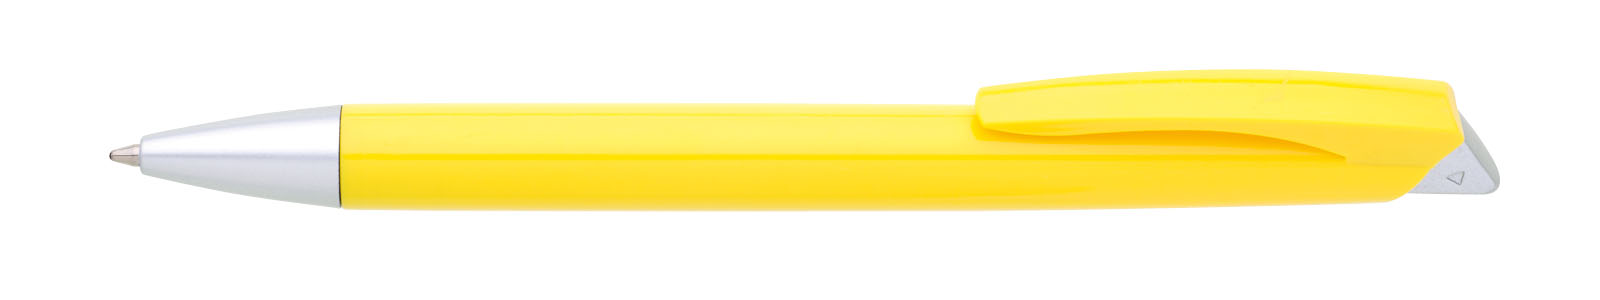 Propiska plast RIORE, žlutá